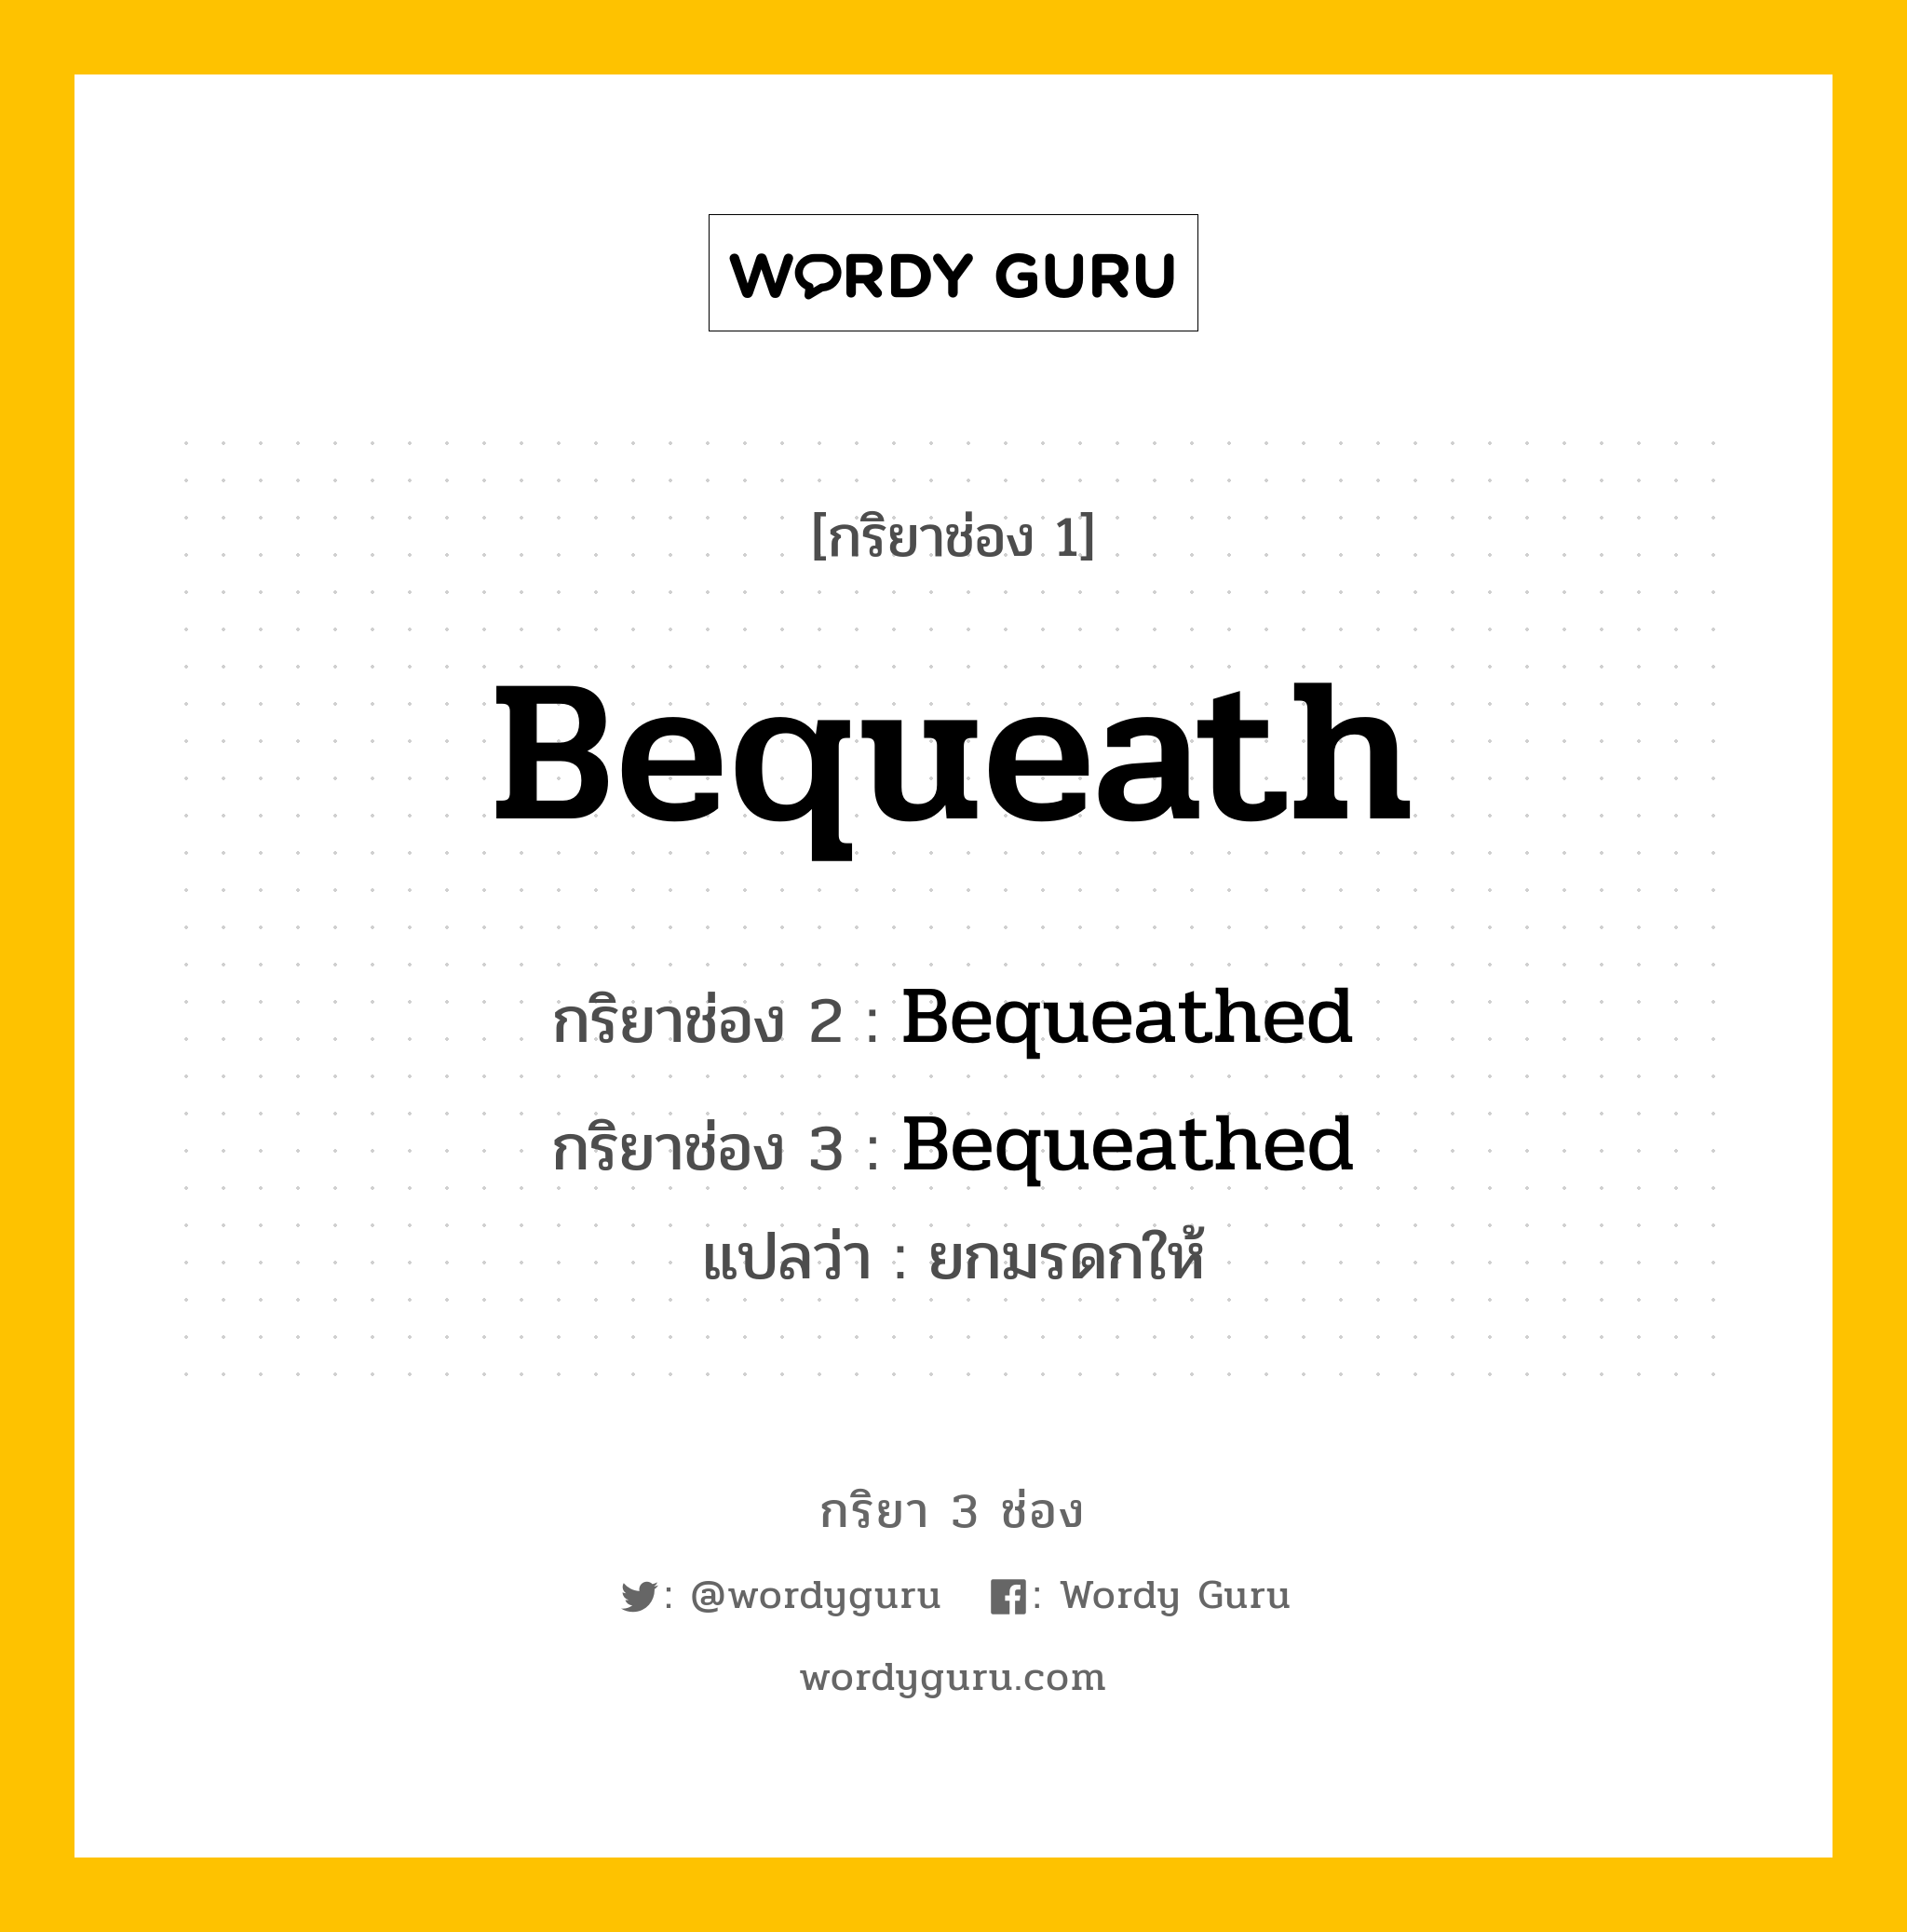 กริยา 3 ช่อง: Bequeath ช่อง 2 Bequeath ช่อง 3 คืออะไร, กริยาช่อง 1 Bequeath กริยาช่อง 2 Bequeathed กริยาช่อง 3 Bequeathed แปลว่า ยกมรดกให้ หมวด Regular Verb